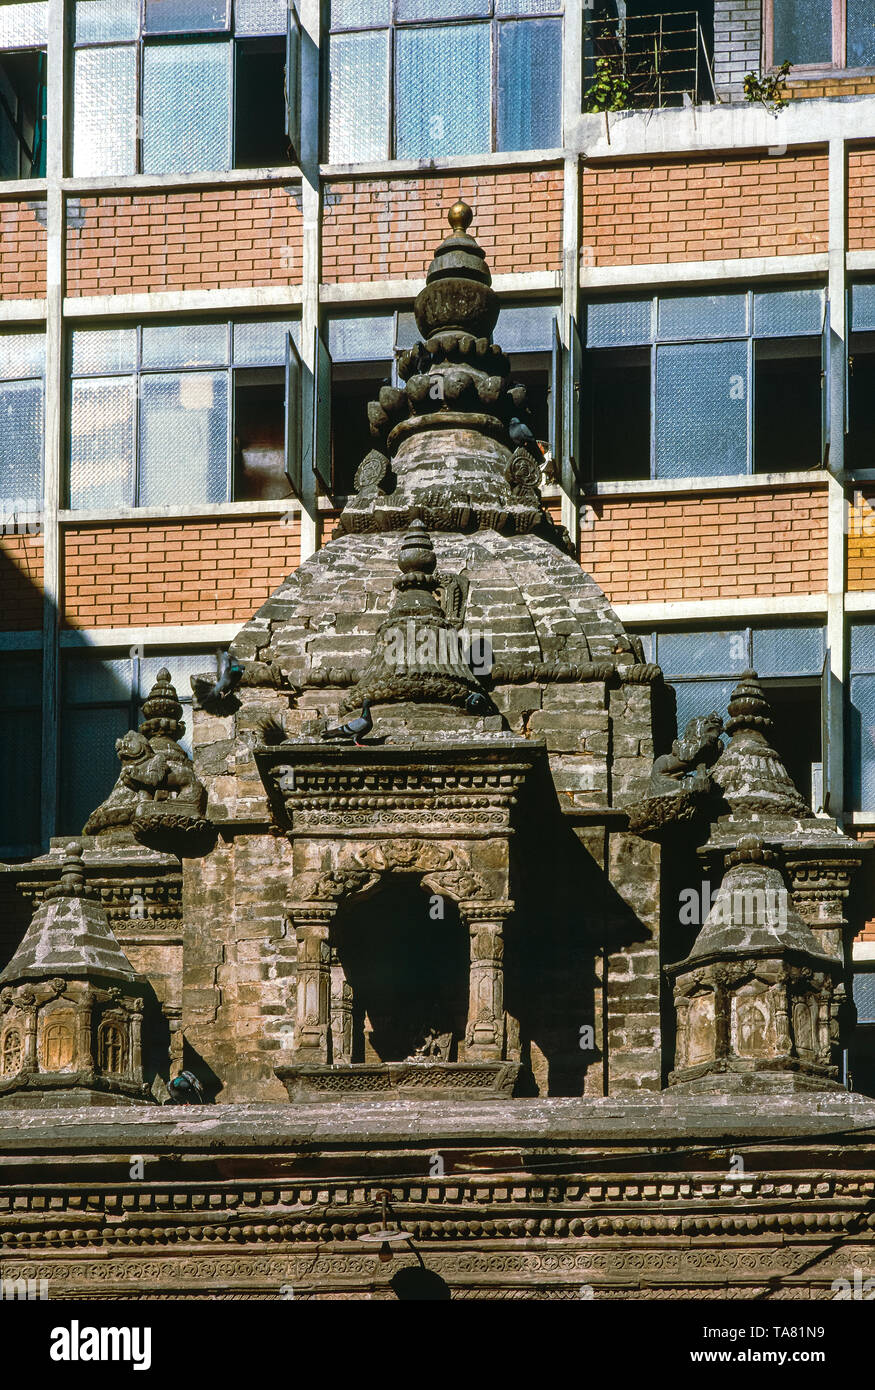 stupa in pietra vecchia in contrasto con un edificio moderno. Fotografia analogica. kathmandu, Nepal Foto Stock